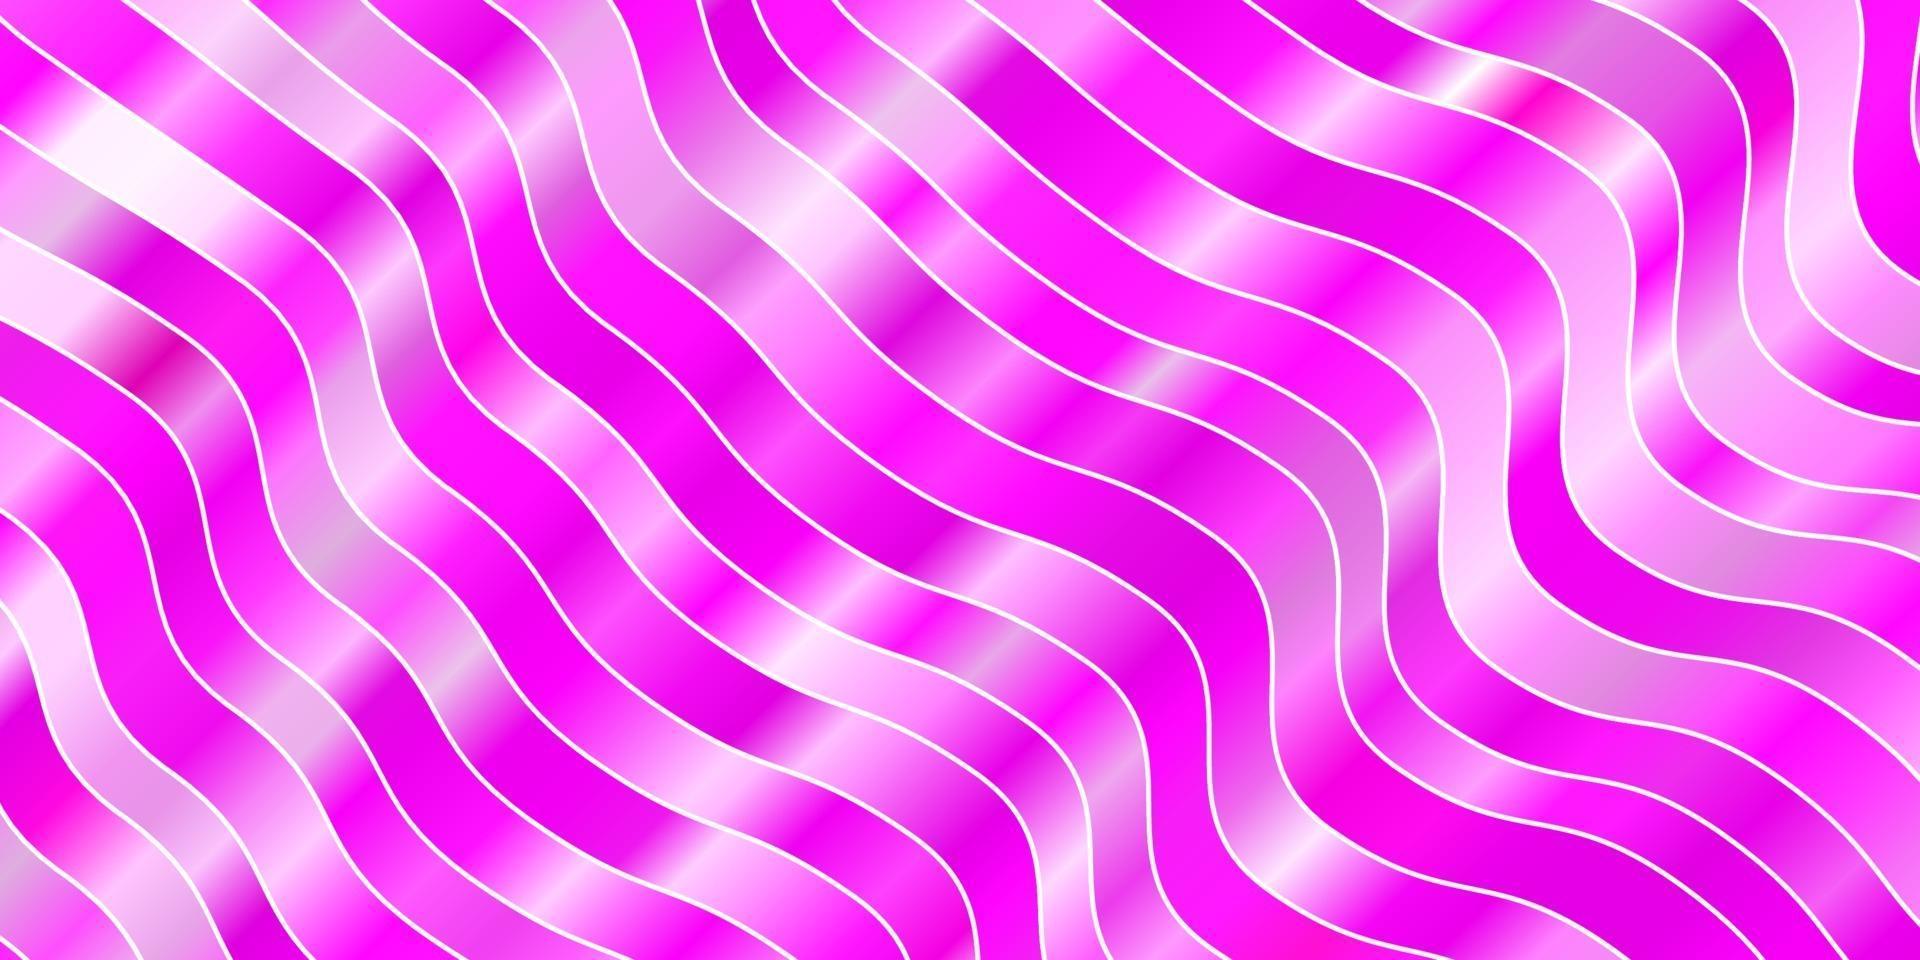 plantilla de vector rosa claro con líneas.